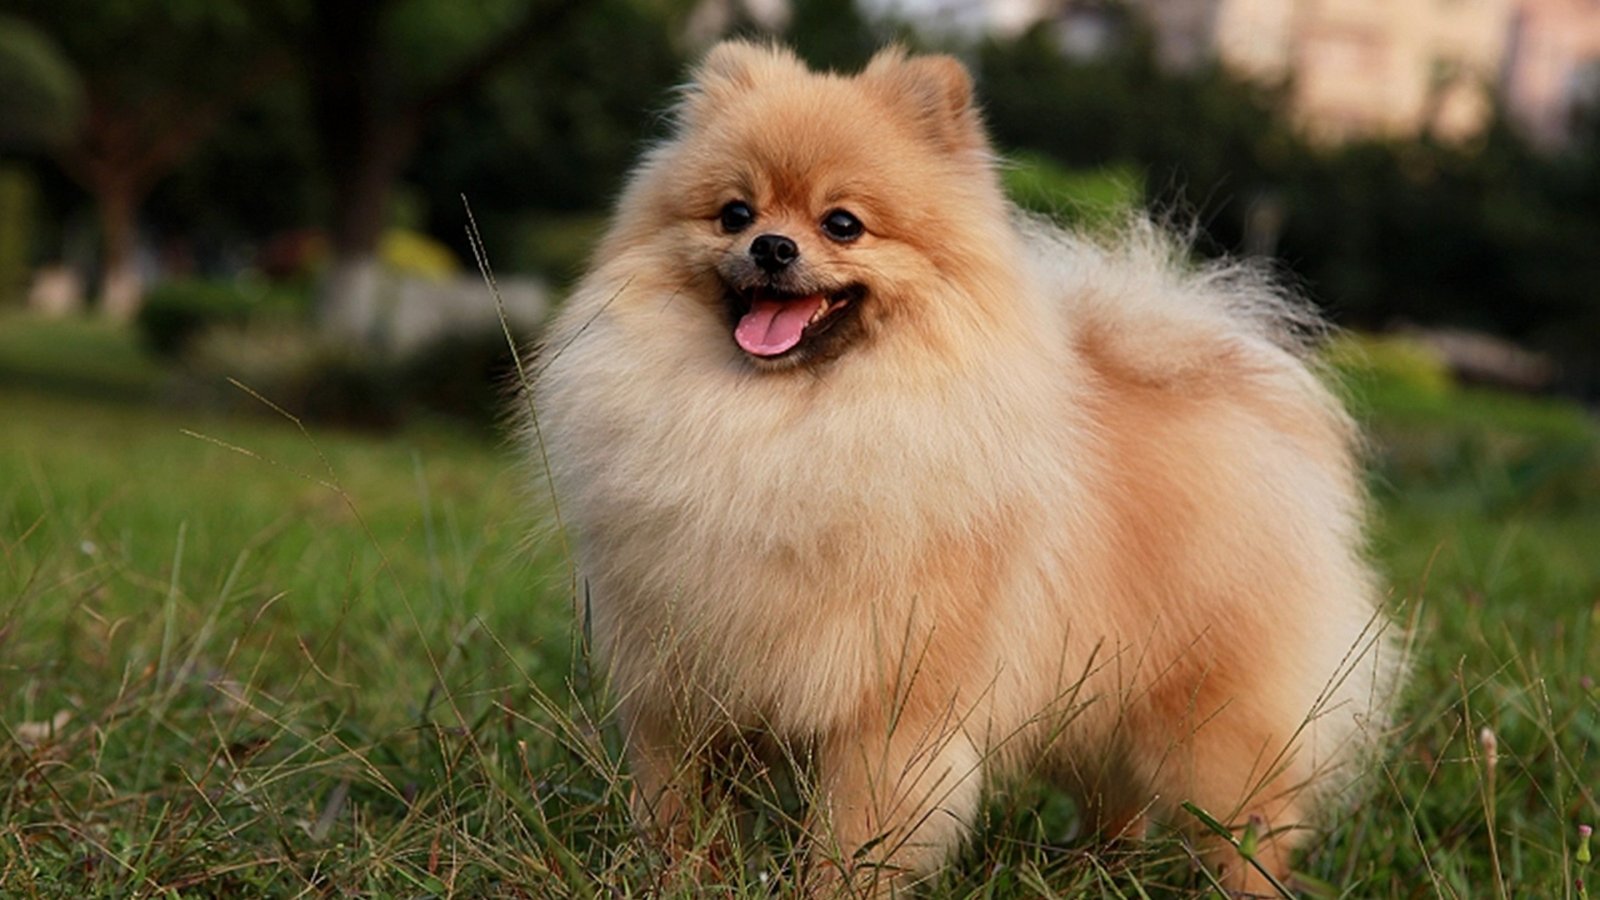 ten cutest dog breeds